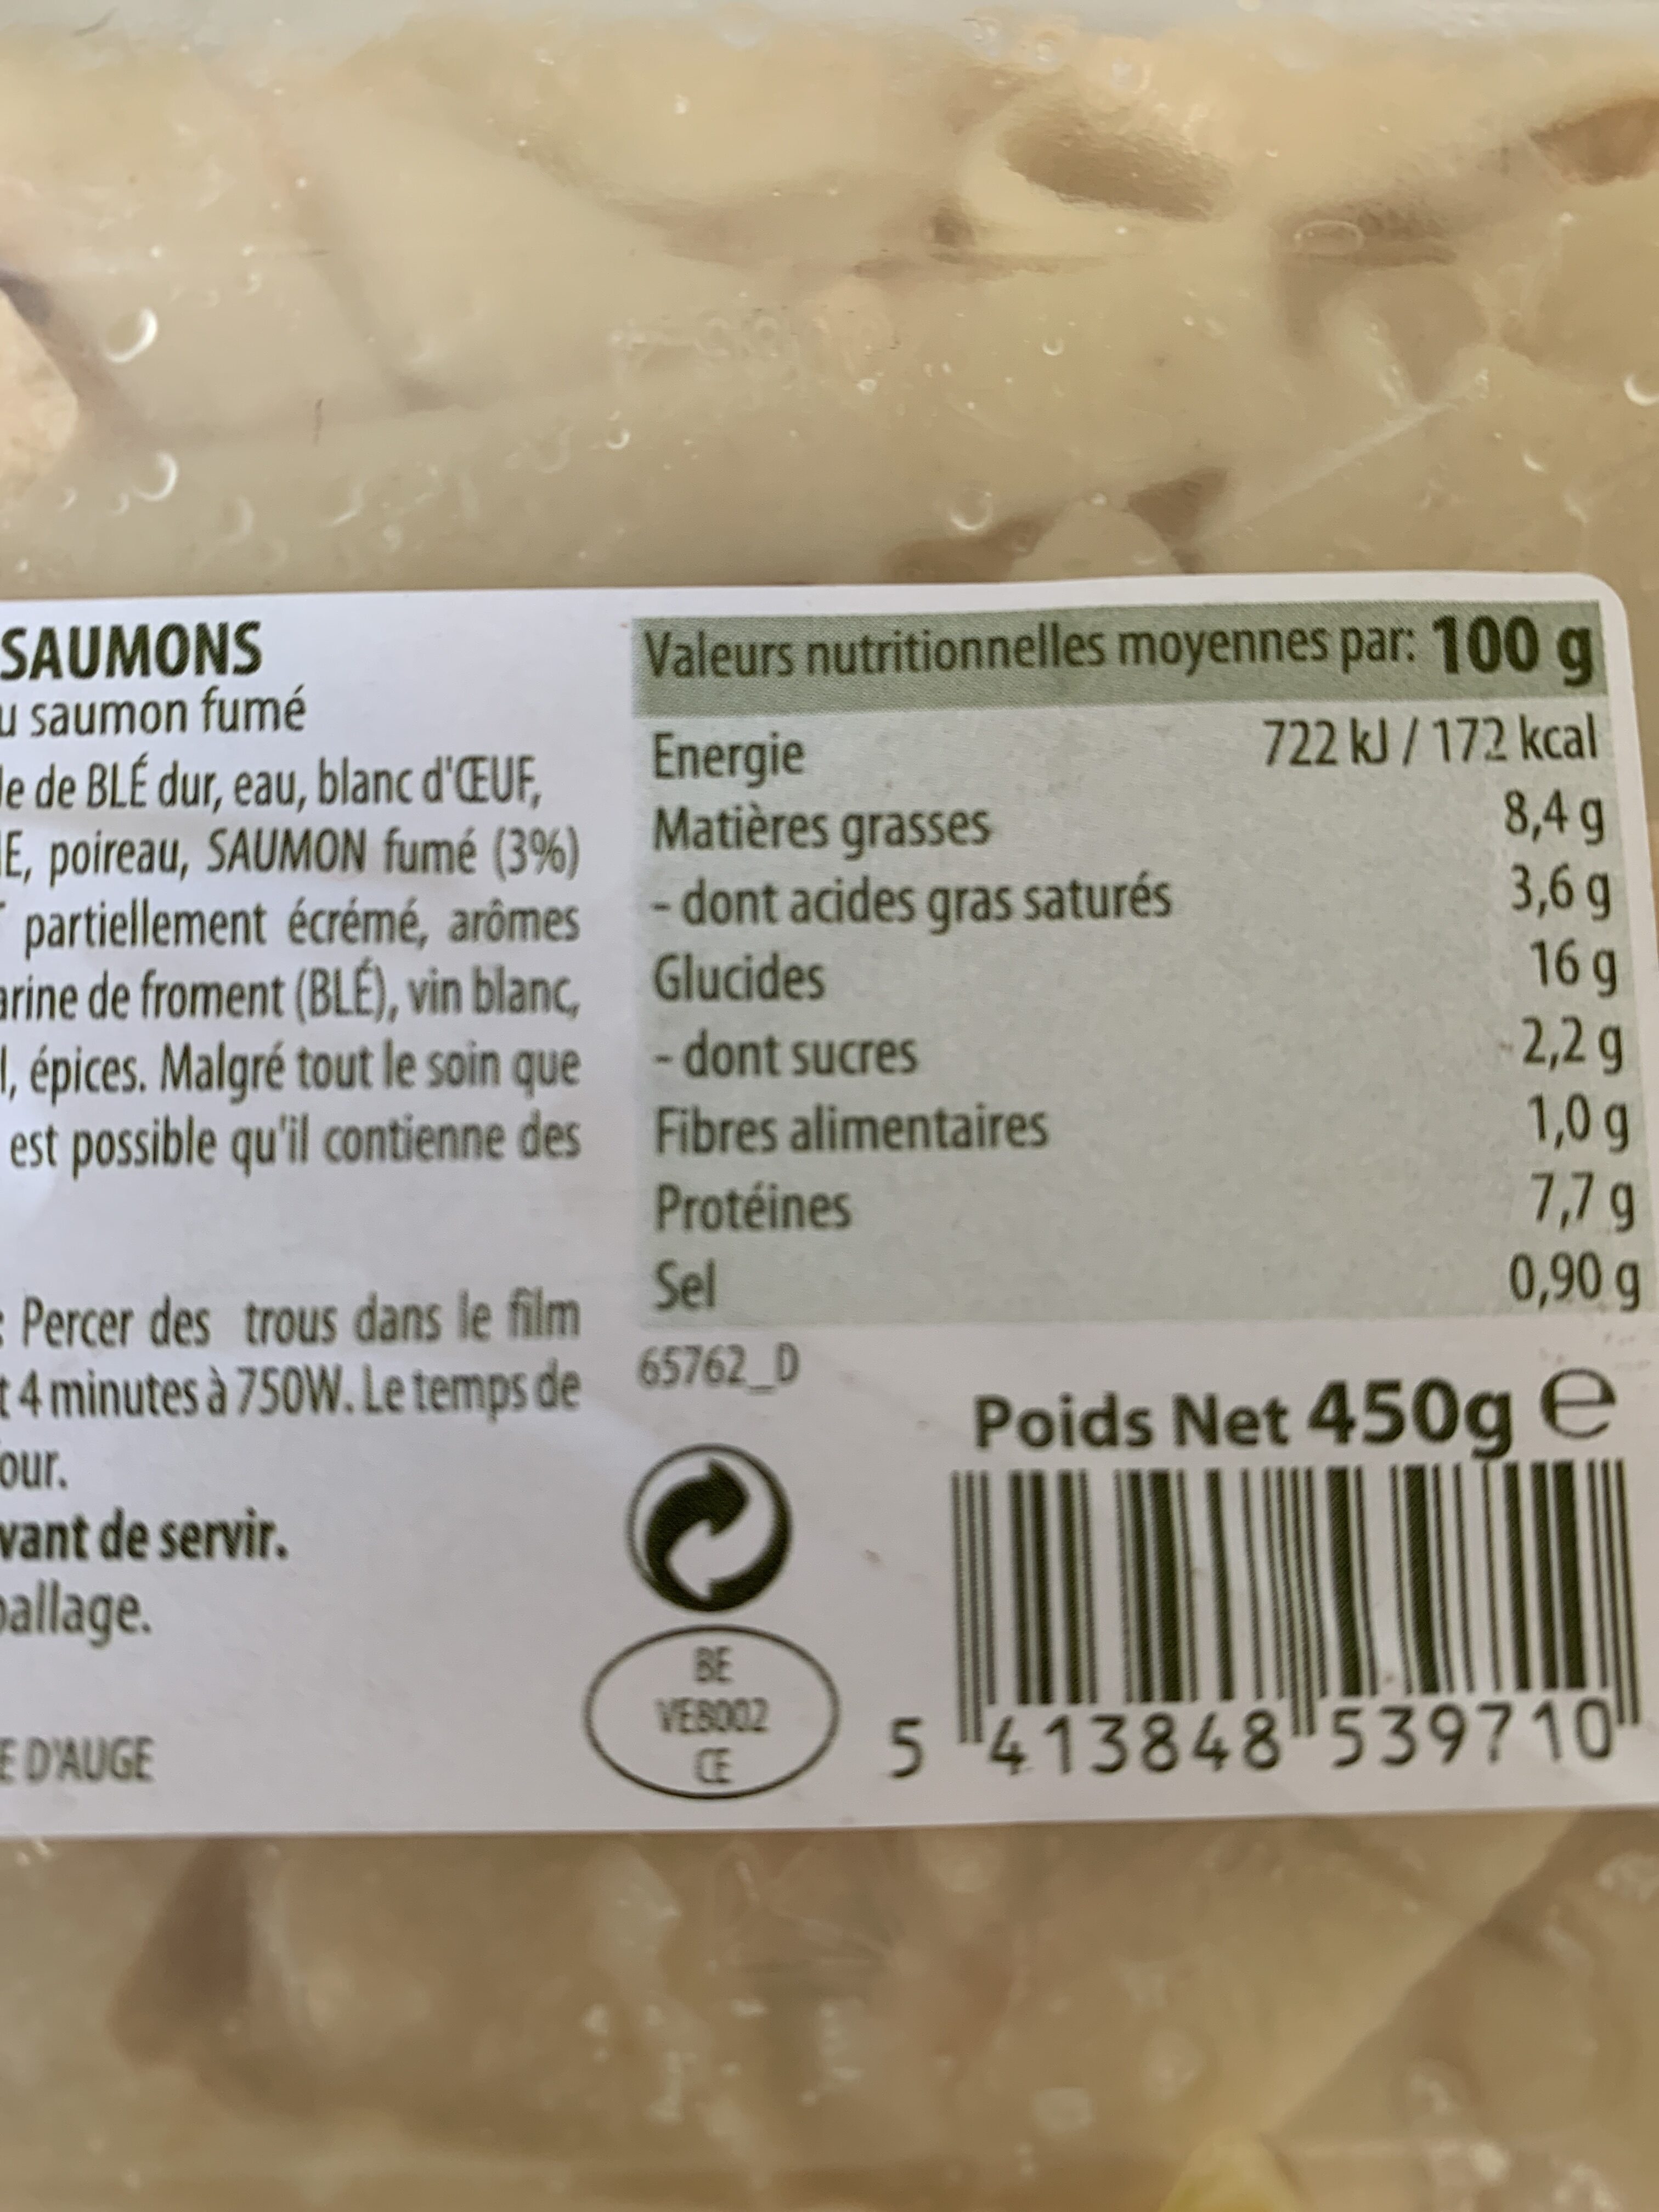 Tagliatelles au saumon - Instruction de recyclage et/ou informations d'emballage